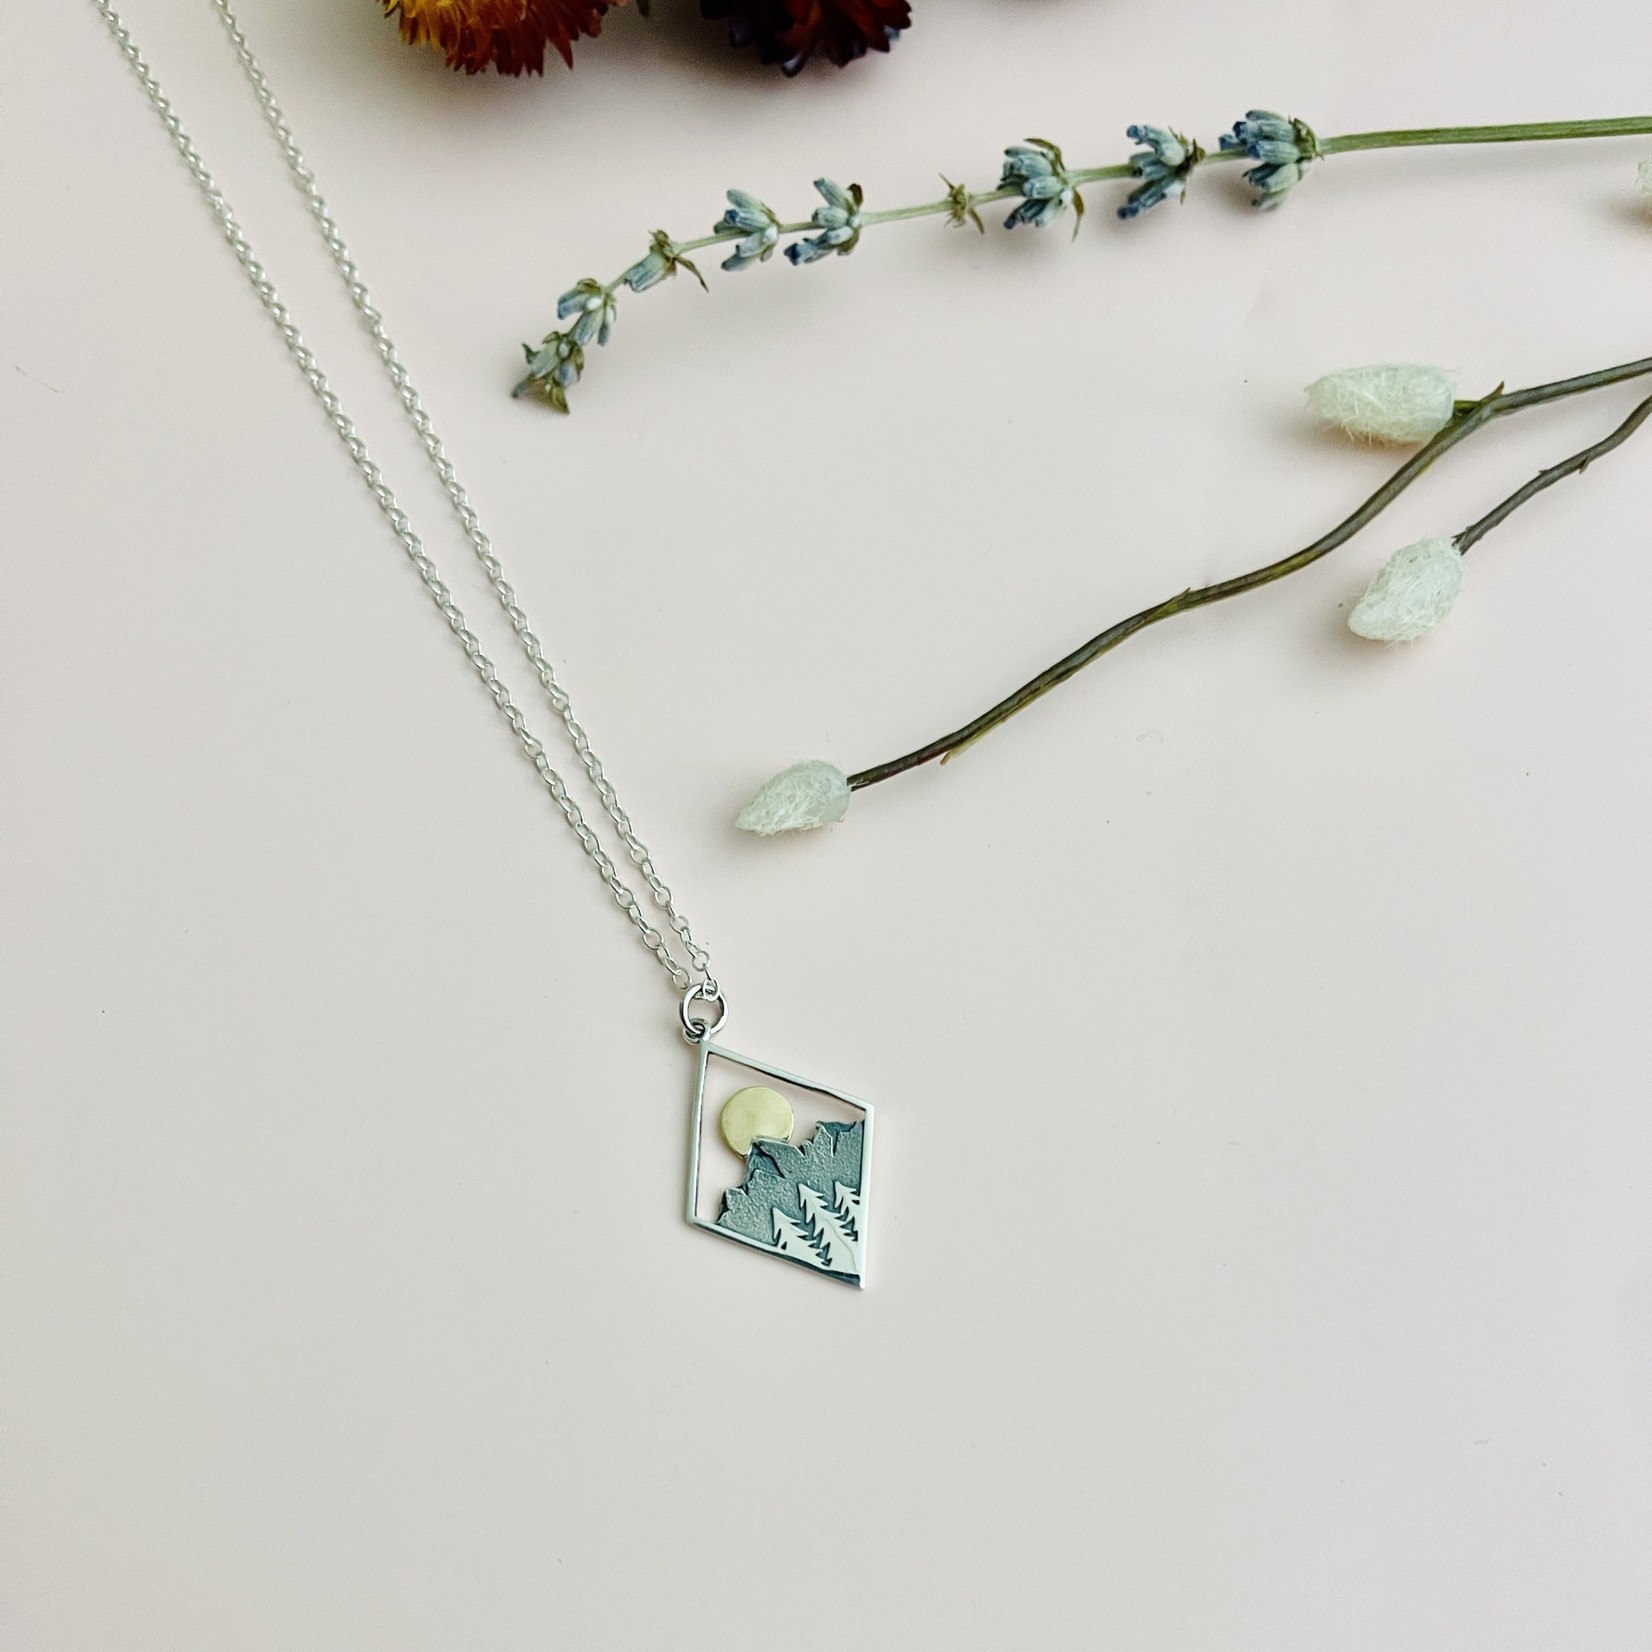 Nina Designs Silver Mountain Charm Necklace, 18"